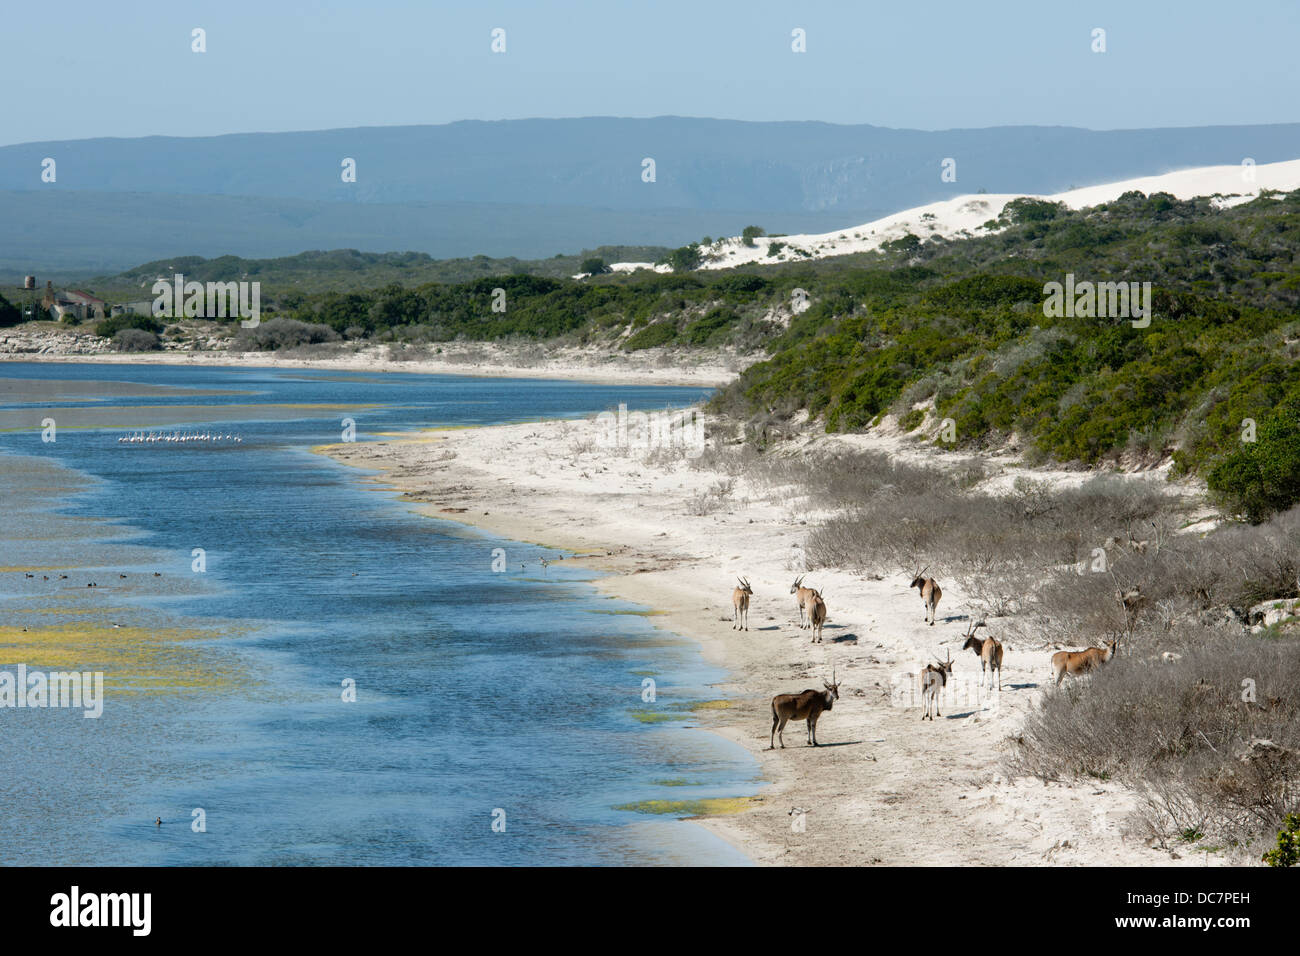 Gemeinsame Eland (Tauro Oryx) an De Hoop Vlei, De Hoop Nature Reserve, Western Cape, South Africa Stockfoto